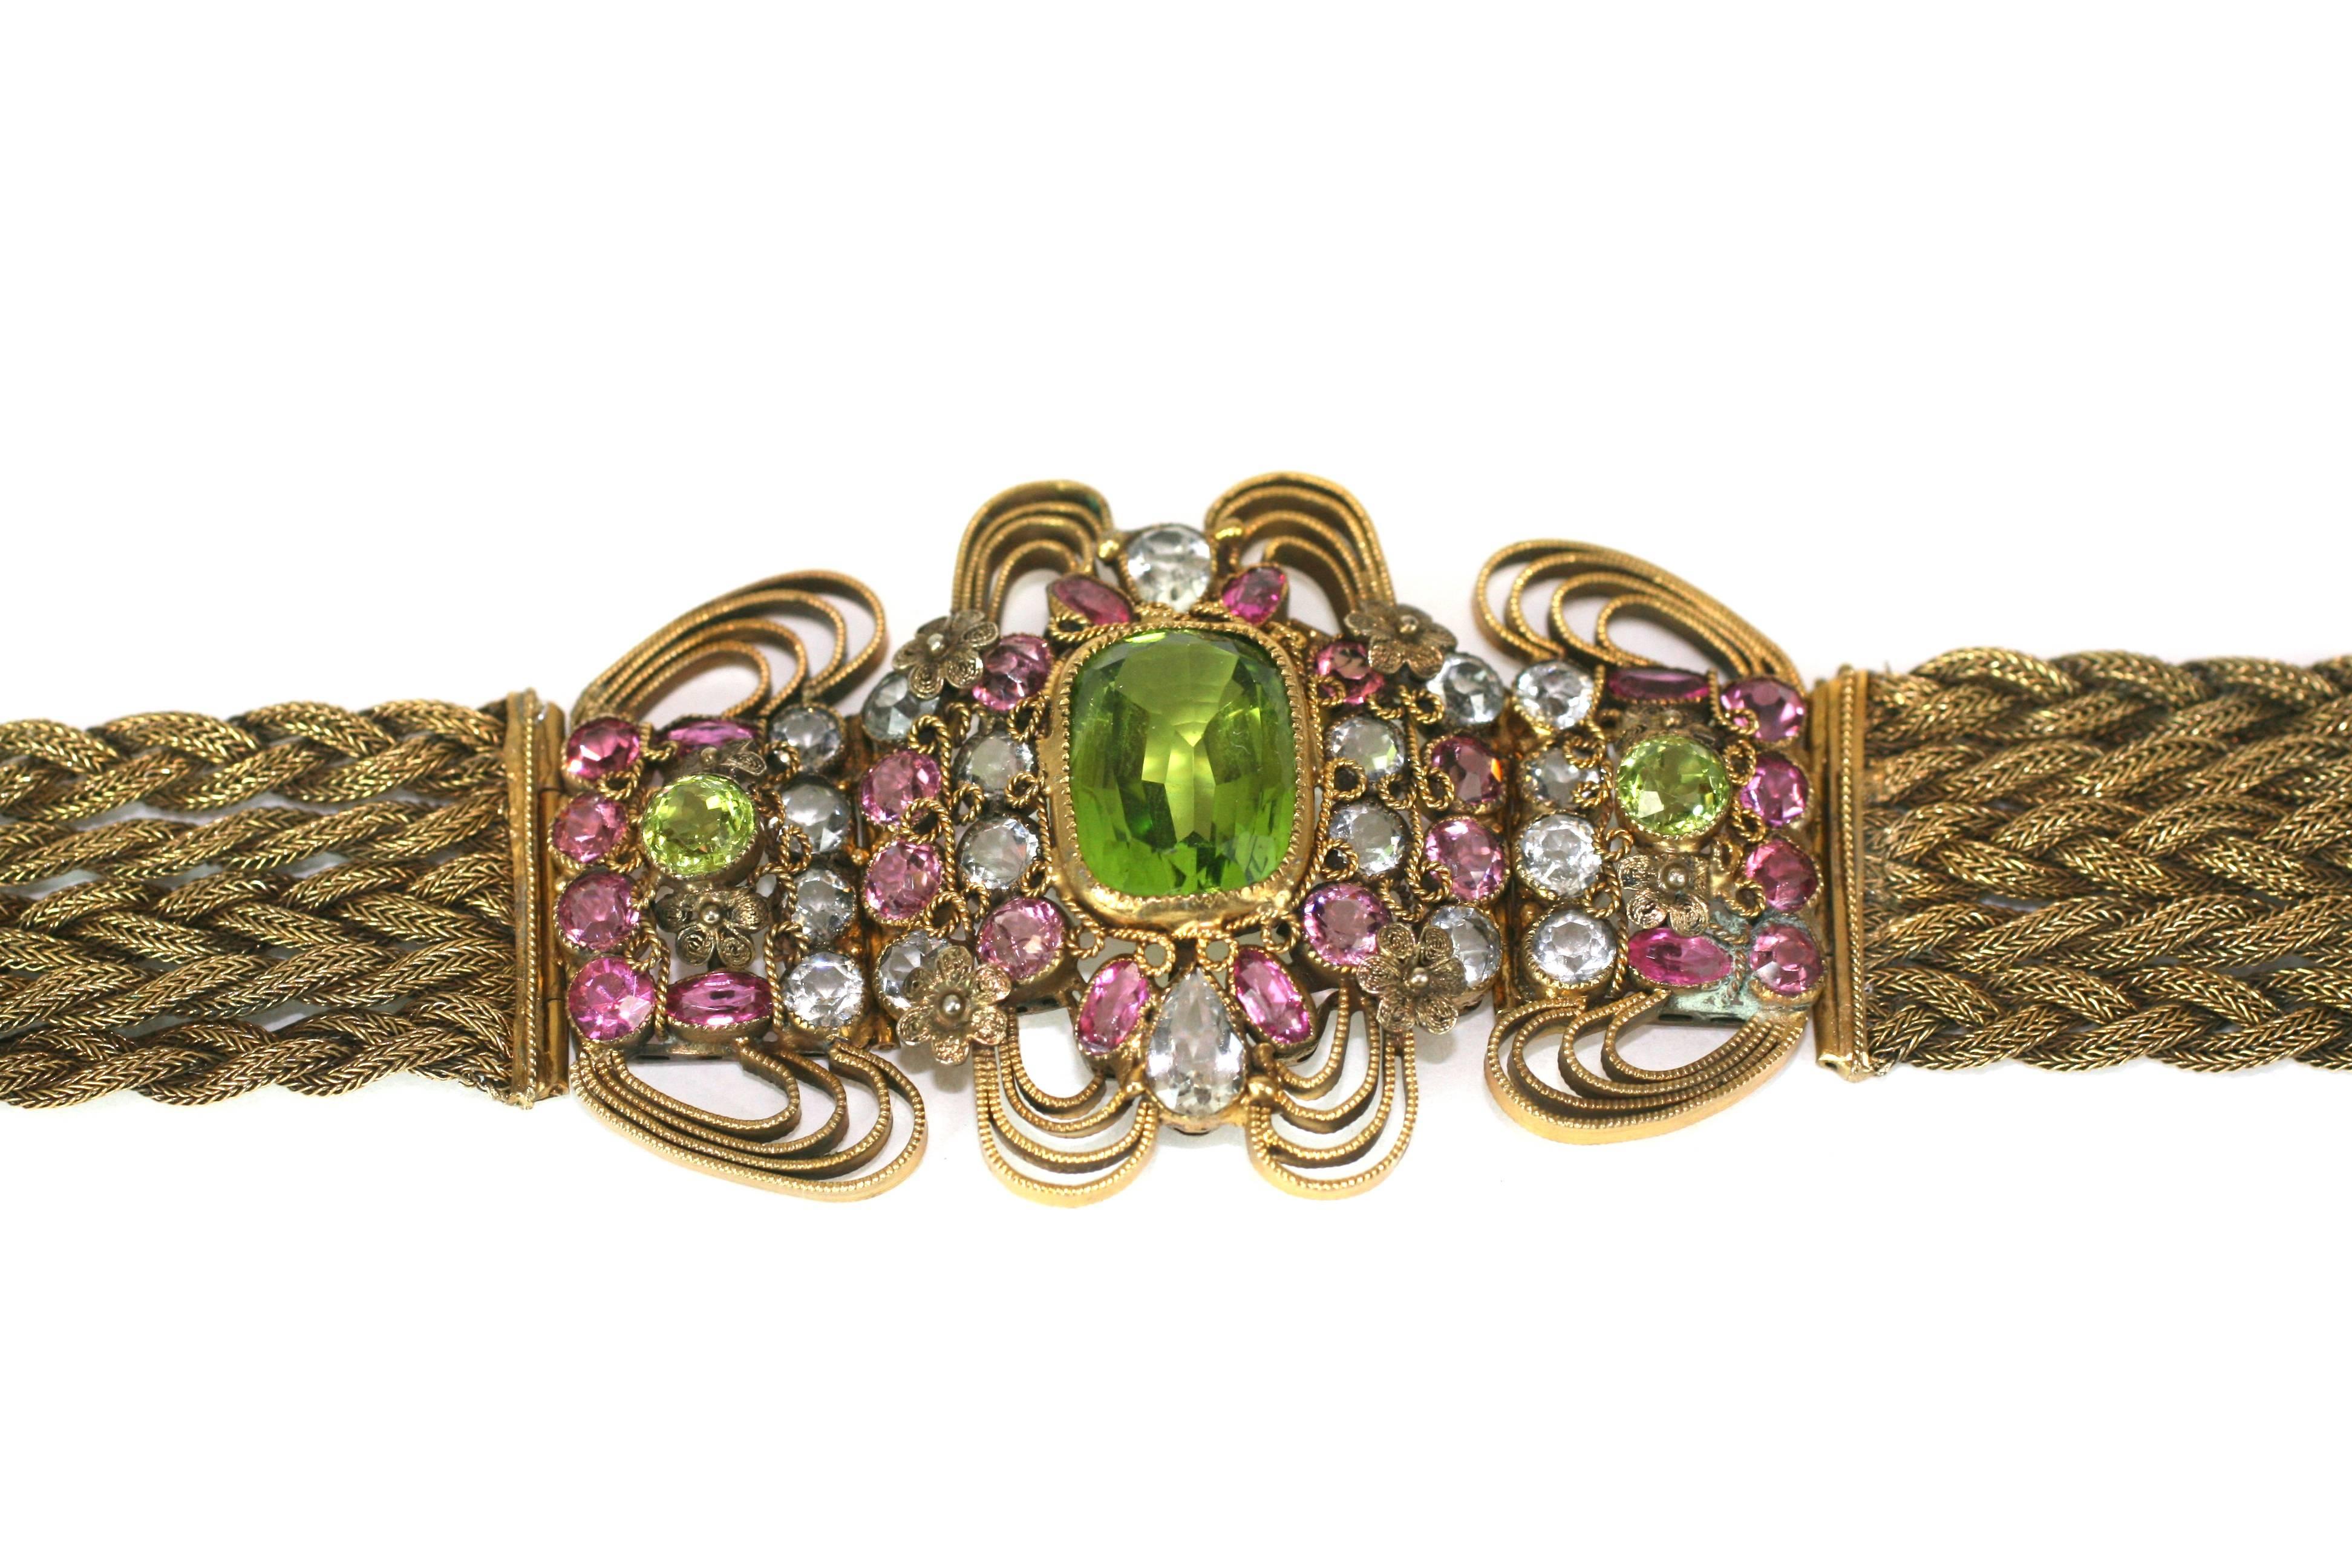 Elaborate Jeweled Hobe Bracelet 2